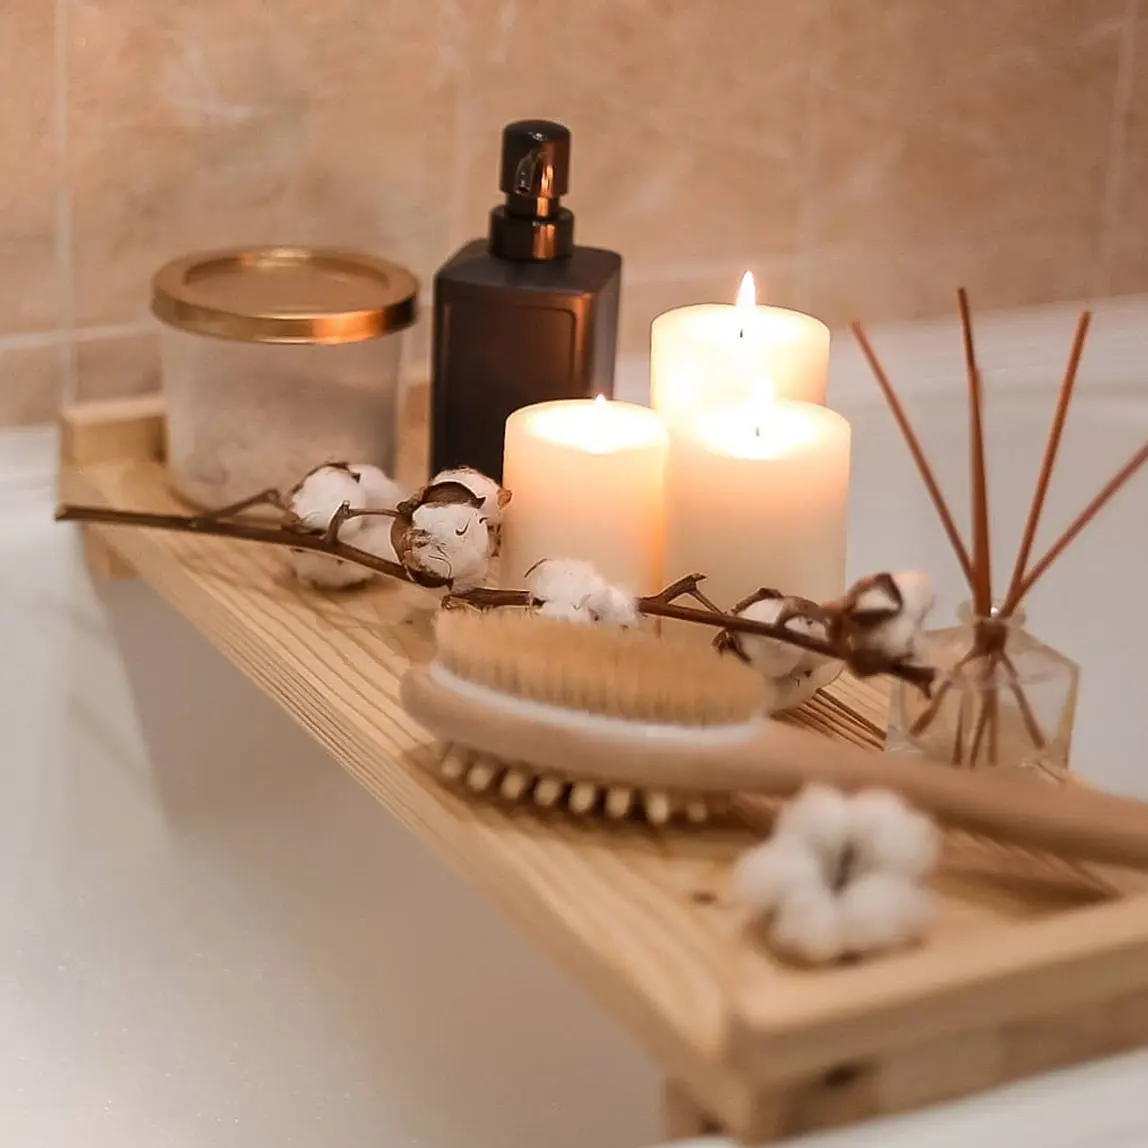 Ремонт ванной комнаты своими руками в хрущевке: как сделать, фото, советы, идеи